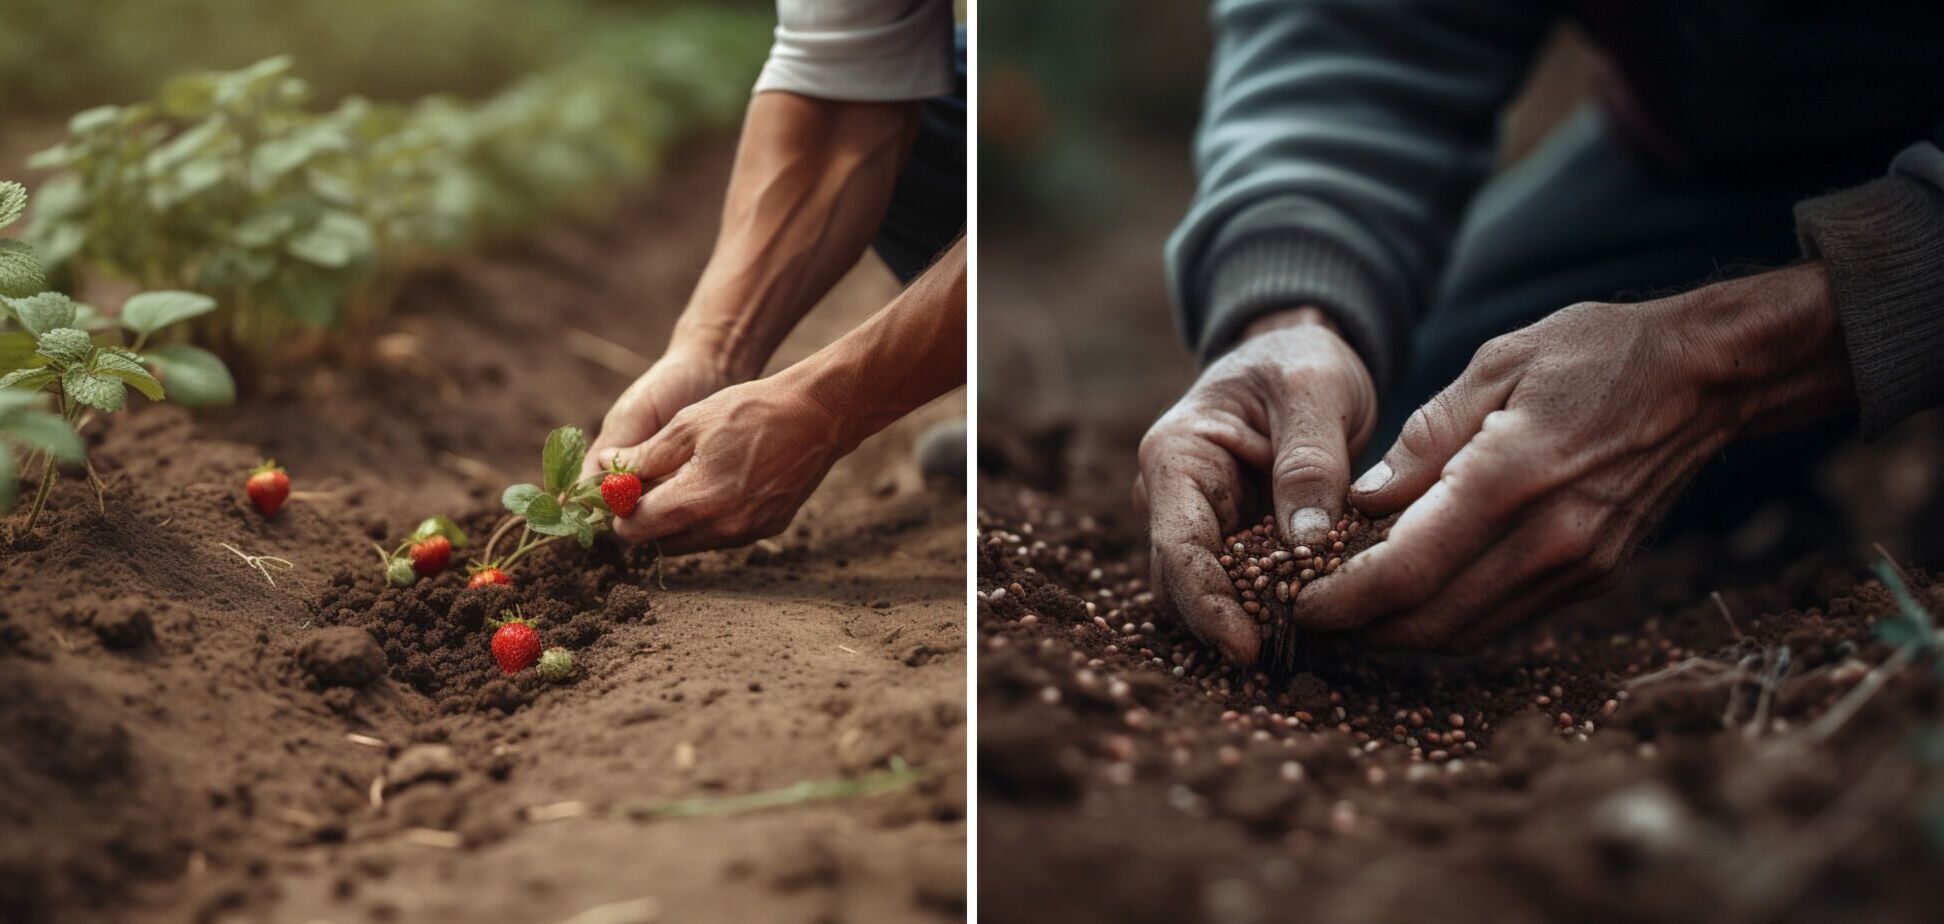 Что посадить после клубники, чтобы восстановить плодородие почвы: урожай будет гораздо лучше